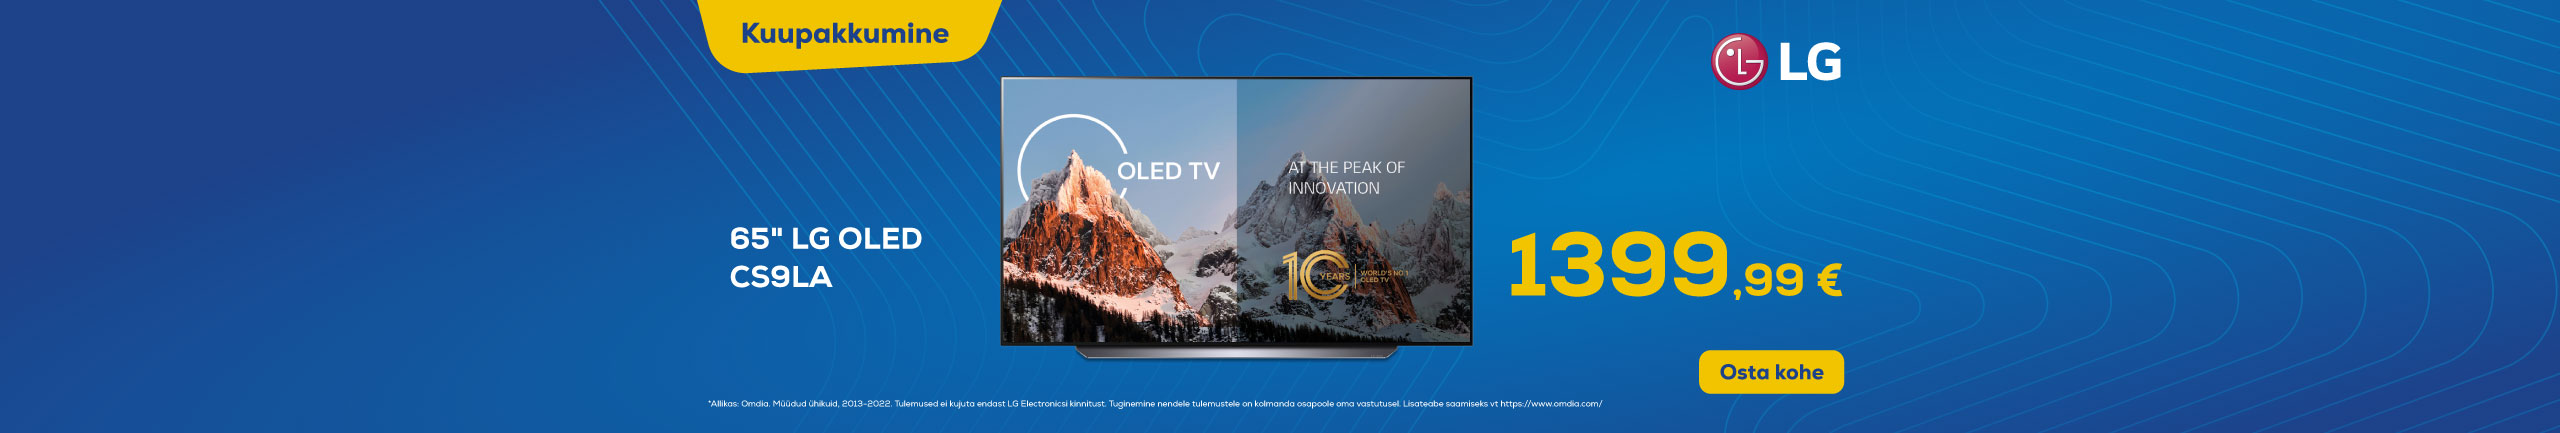 LG OLED TV CS9LA